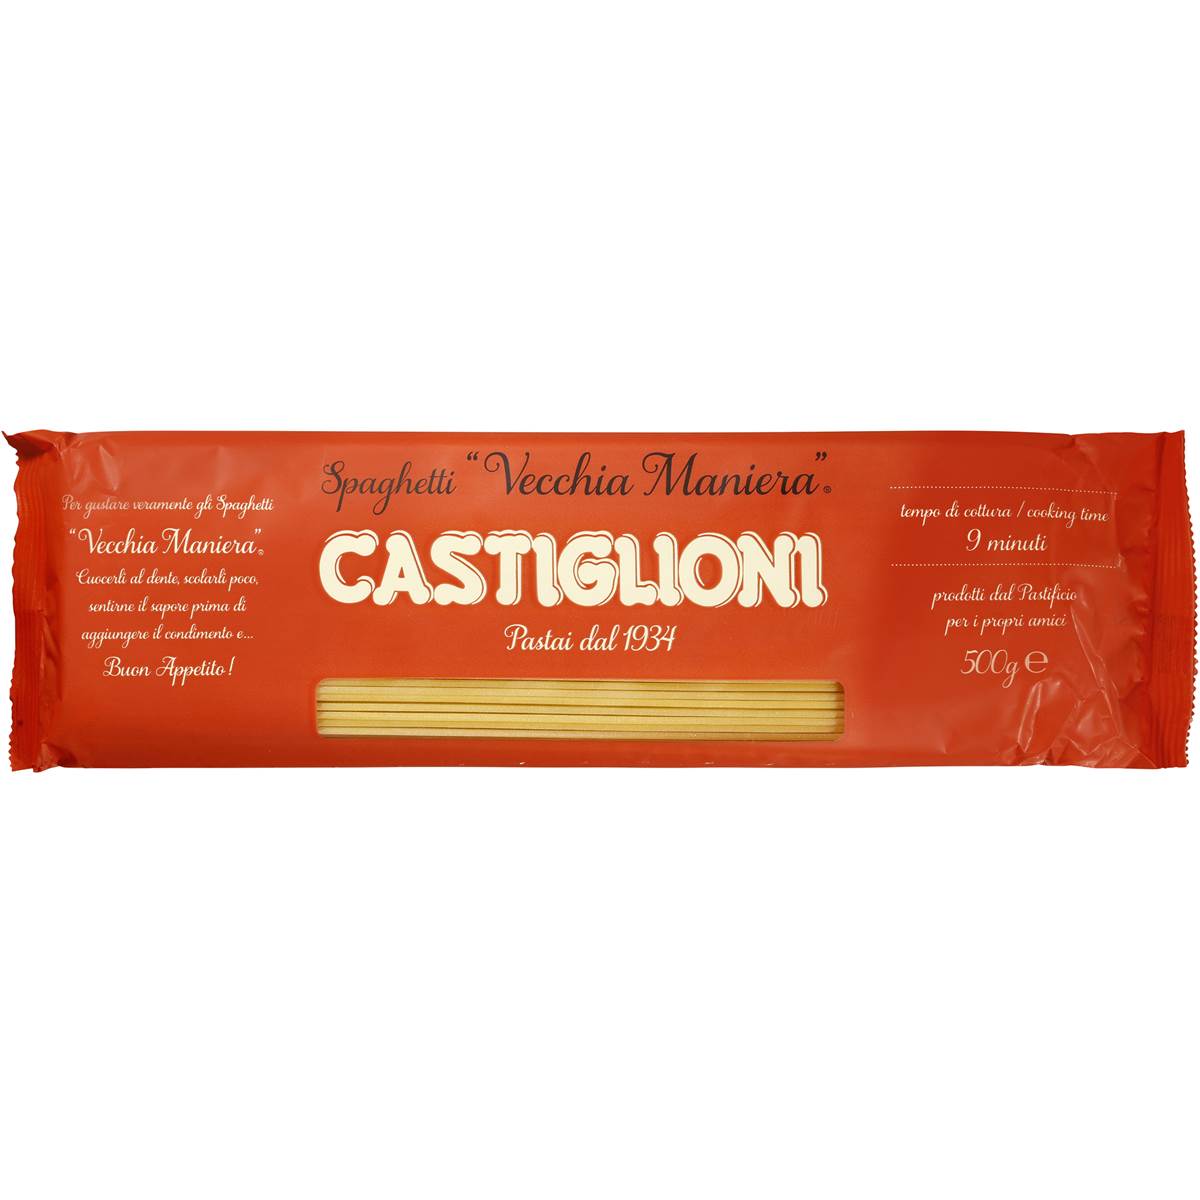 Castiglioni Spaghetti Pasta 